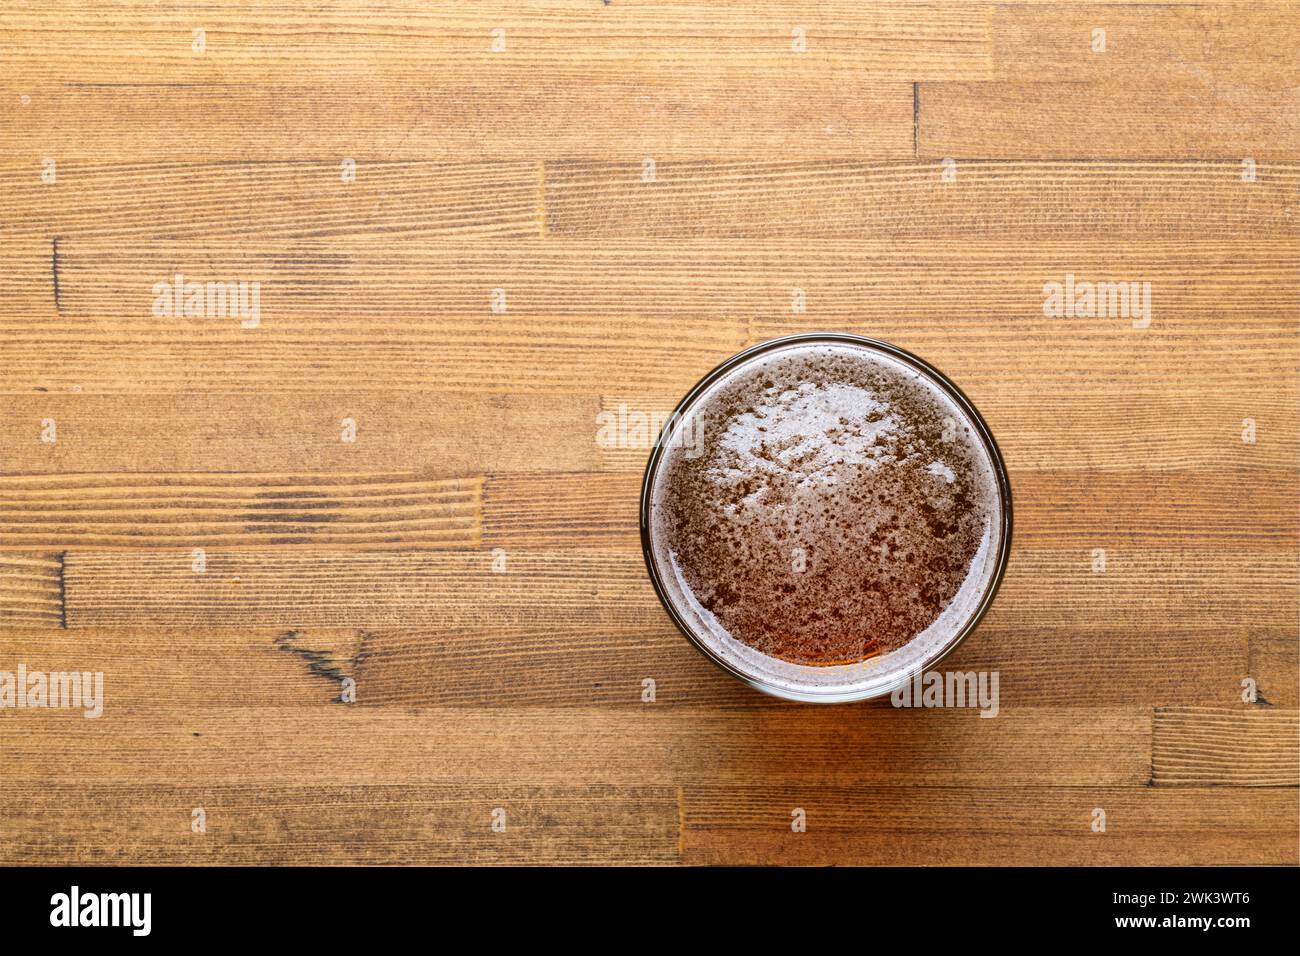 Vista dall'alto verso il basso di una birra artigianale appena versata in un bicchiere posto su un tavolo in legno dai toni caldi Foto Stock